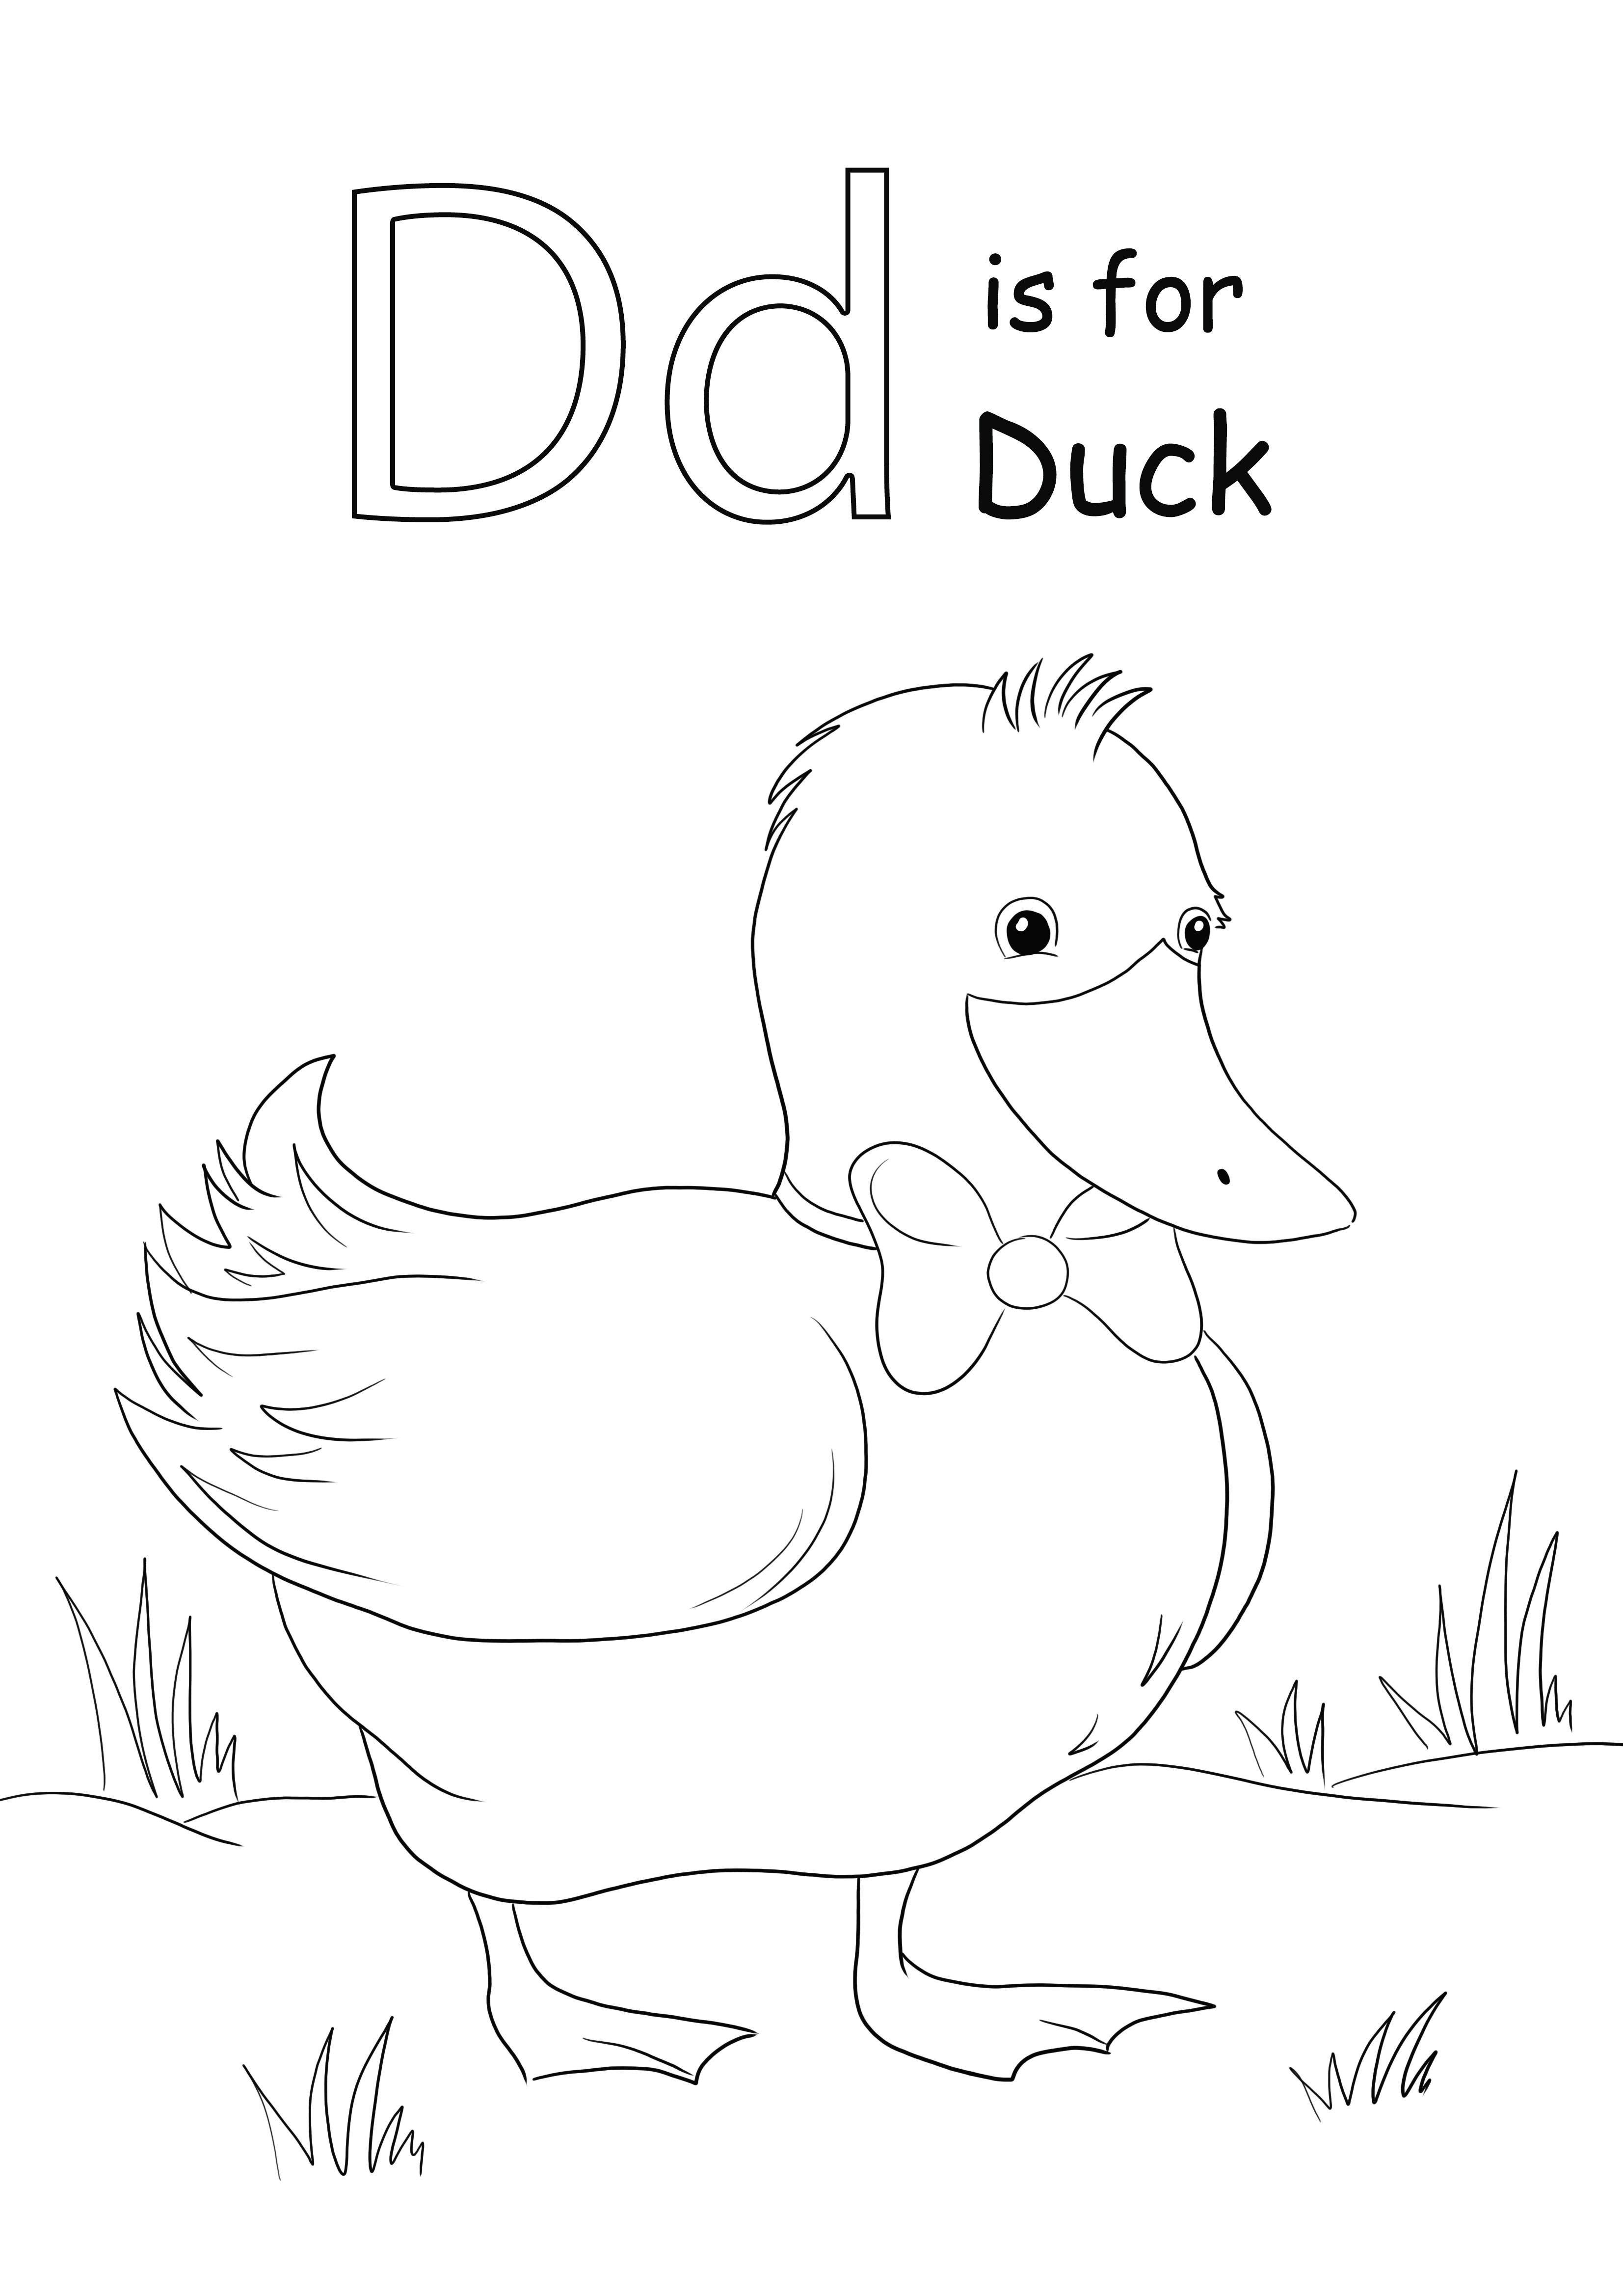 L'impression gratuite de la lettre D est pour l'image de coloriage de canard pour que les enfants apprennent facilement